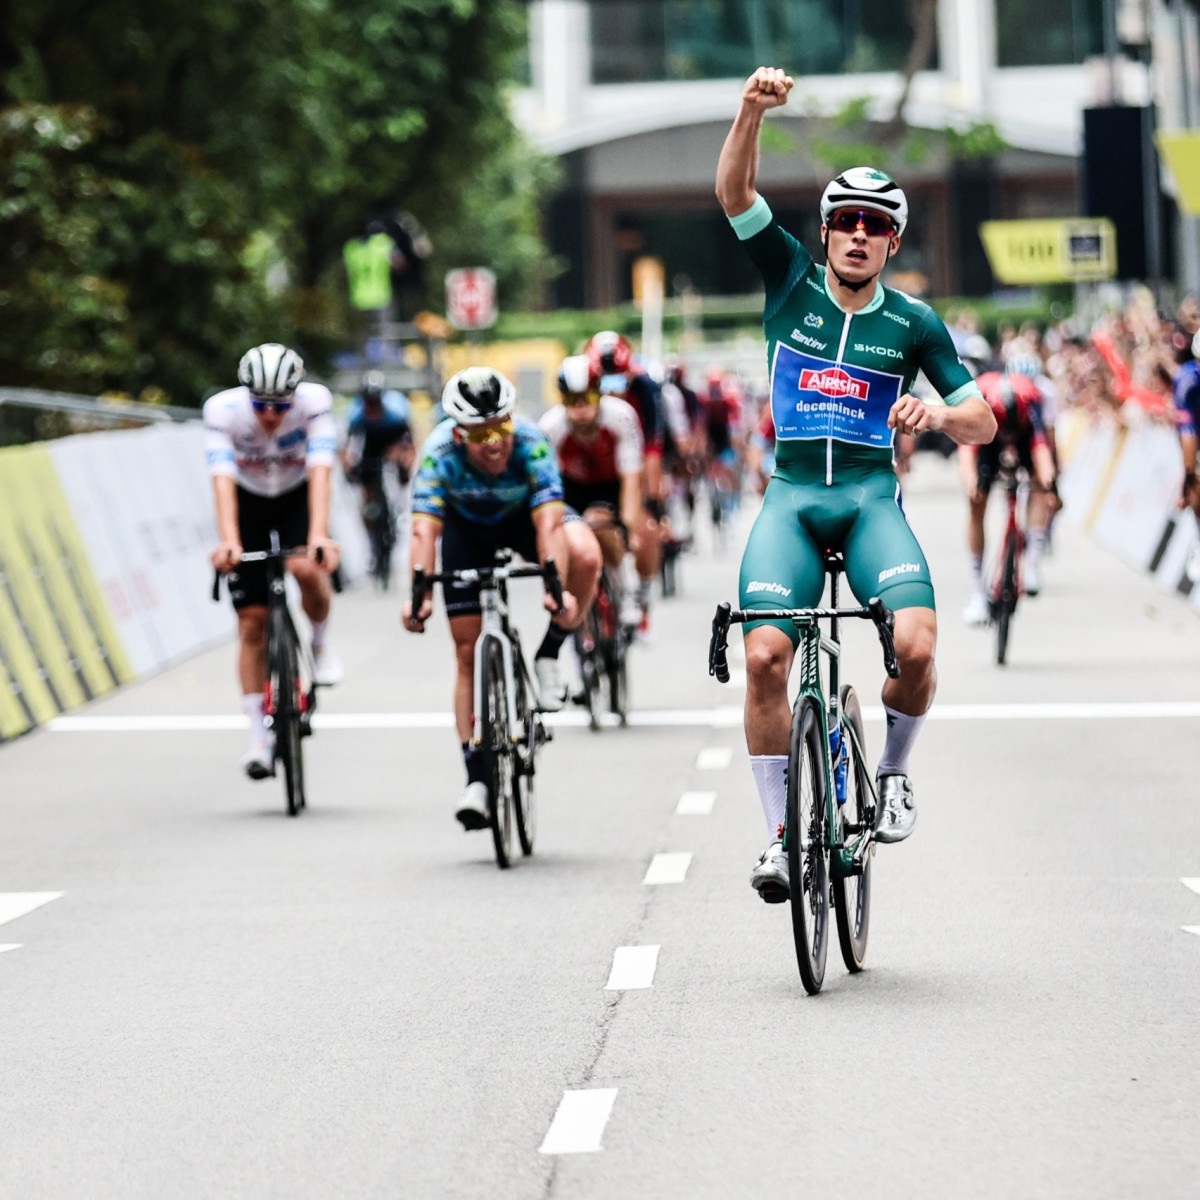 girodociclismo.com.br jasper philipsen bate cavendish e pogacar para vencer o criterium de singapura assista a chegada philipsen singapura